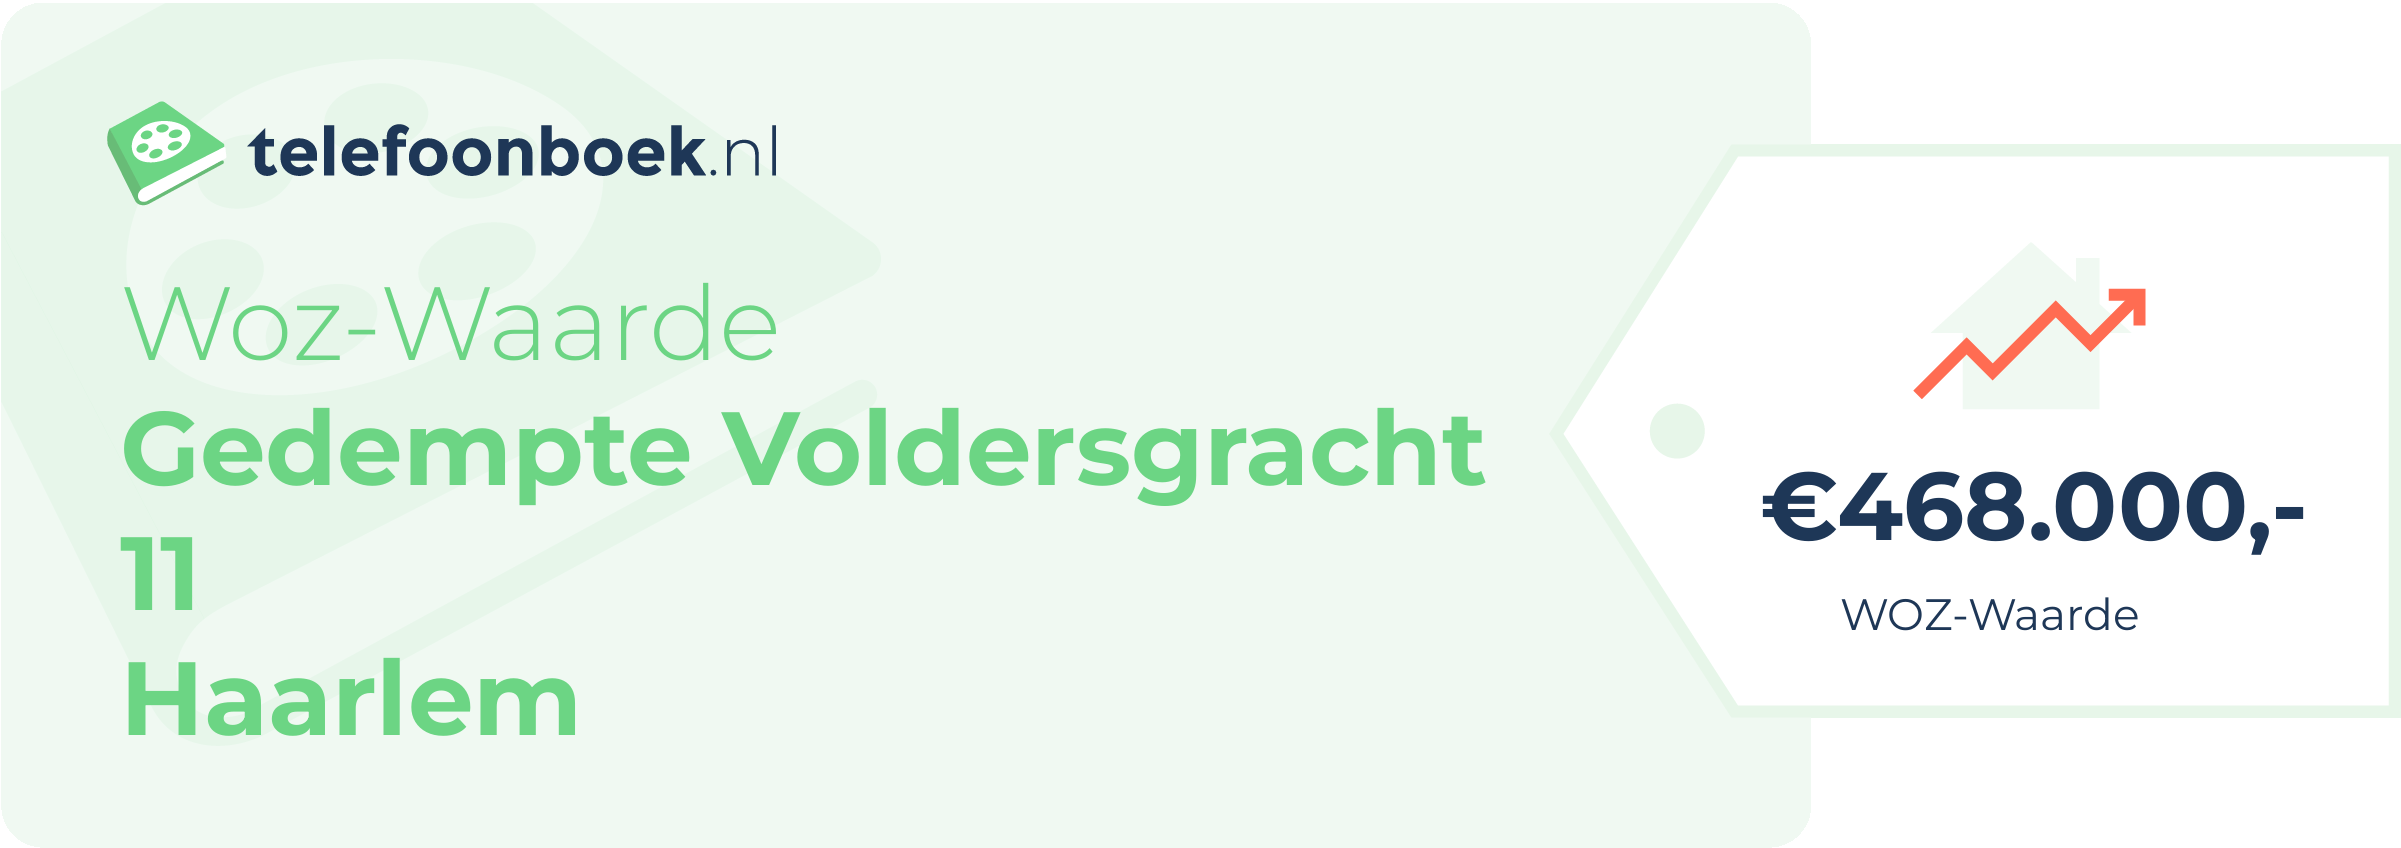 WOZ-waarde Gedempte Voldersgracht 11 Haarlem